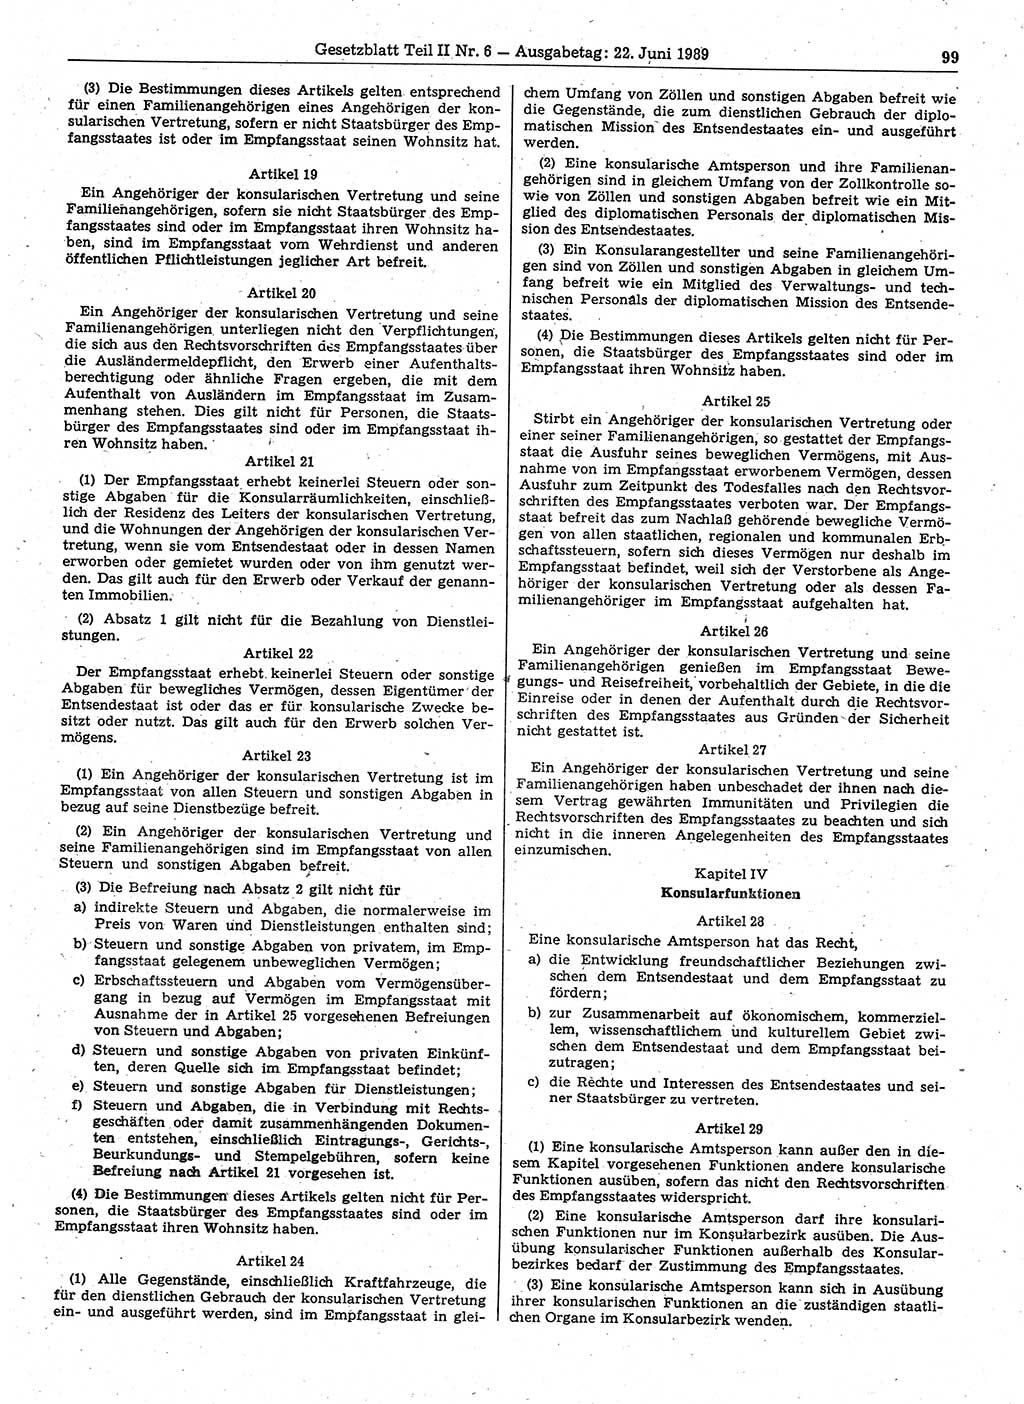 Gesetzblatt (GBl.) der Deutschen Demokratischen Republik (DDR) Teil ⅠⅠ 1989, Seite 99 (GBl. DDR ⅠⅠ 1989, S. 99)